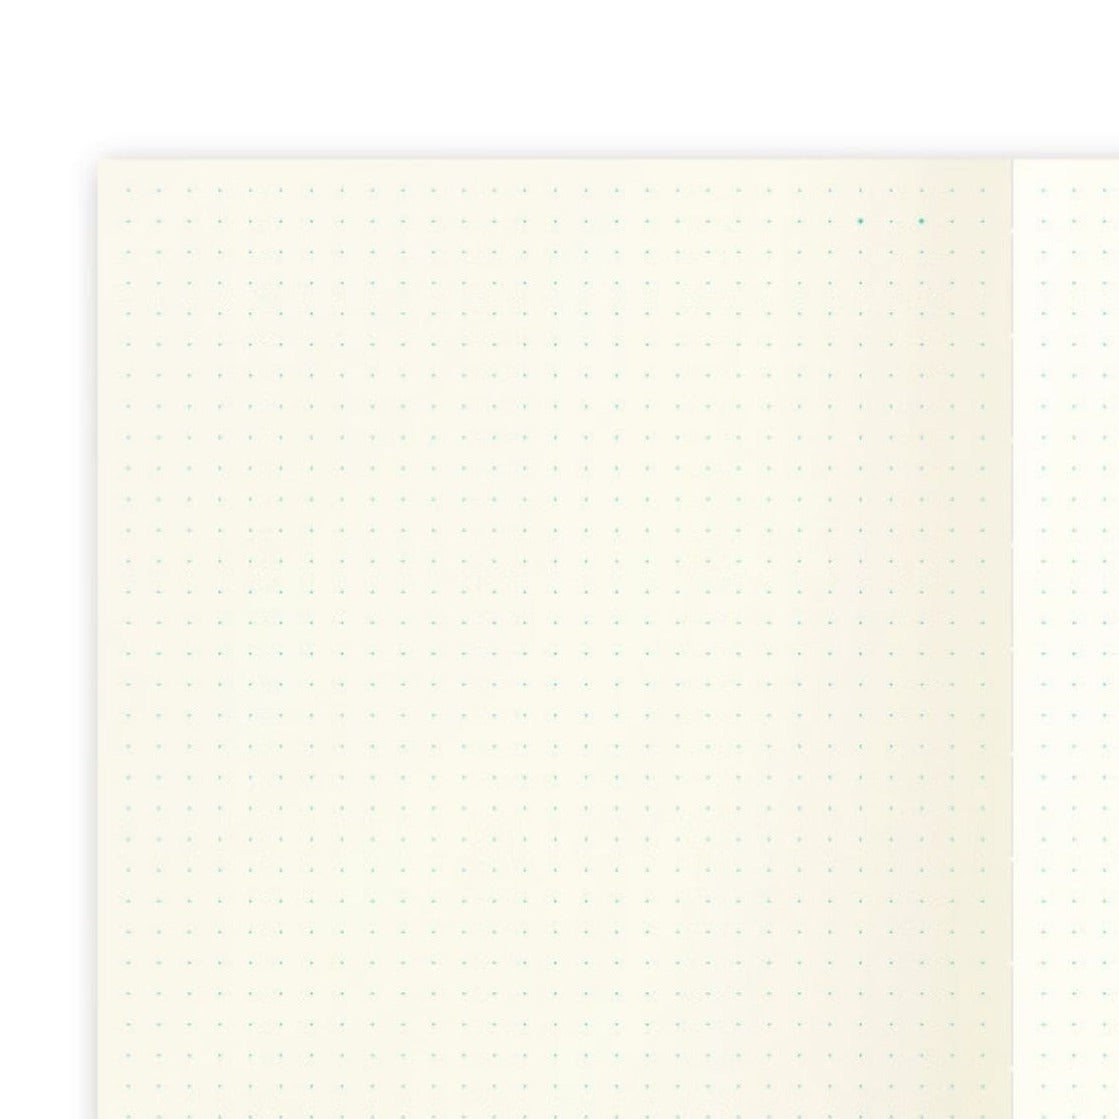 Midori Dotted Notebook A5 closeup on page layout - Paper Kooka Stationery Australia